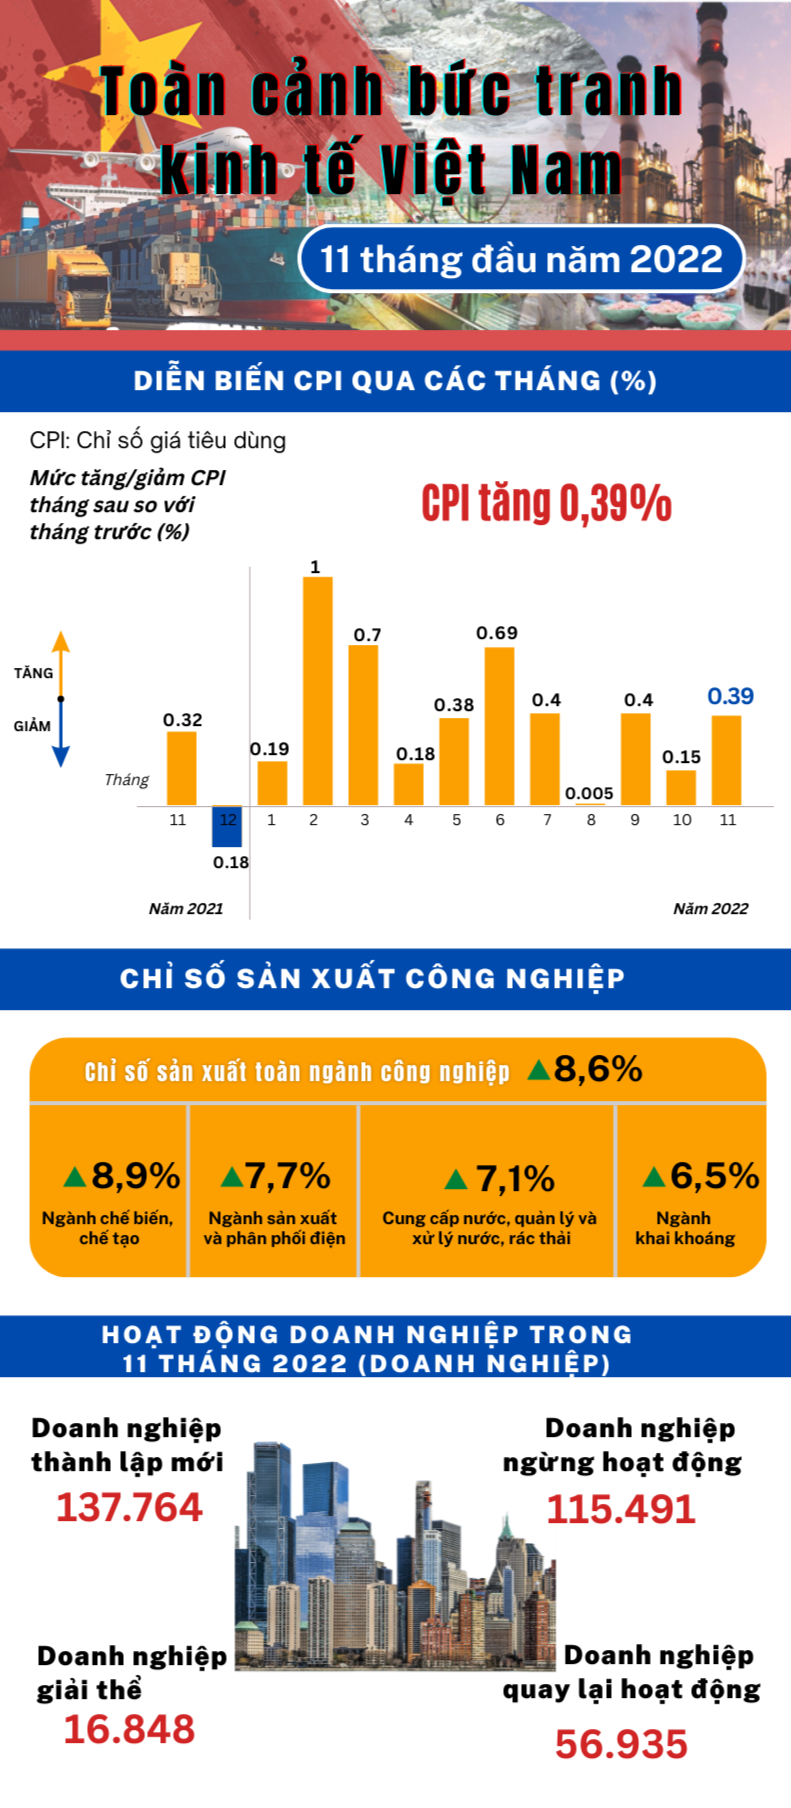 Infographic | Toàn cảnh bức tranh kinh tế Việt Nam 11 tháng đầu năm 2022